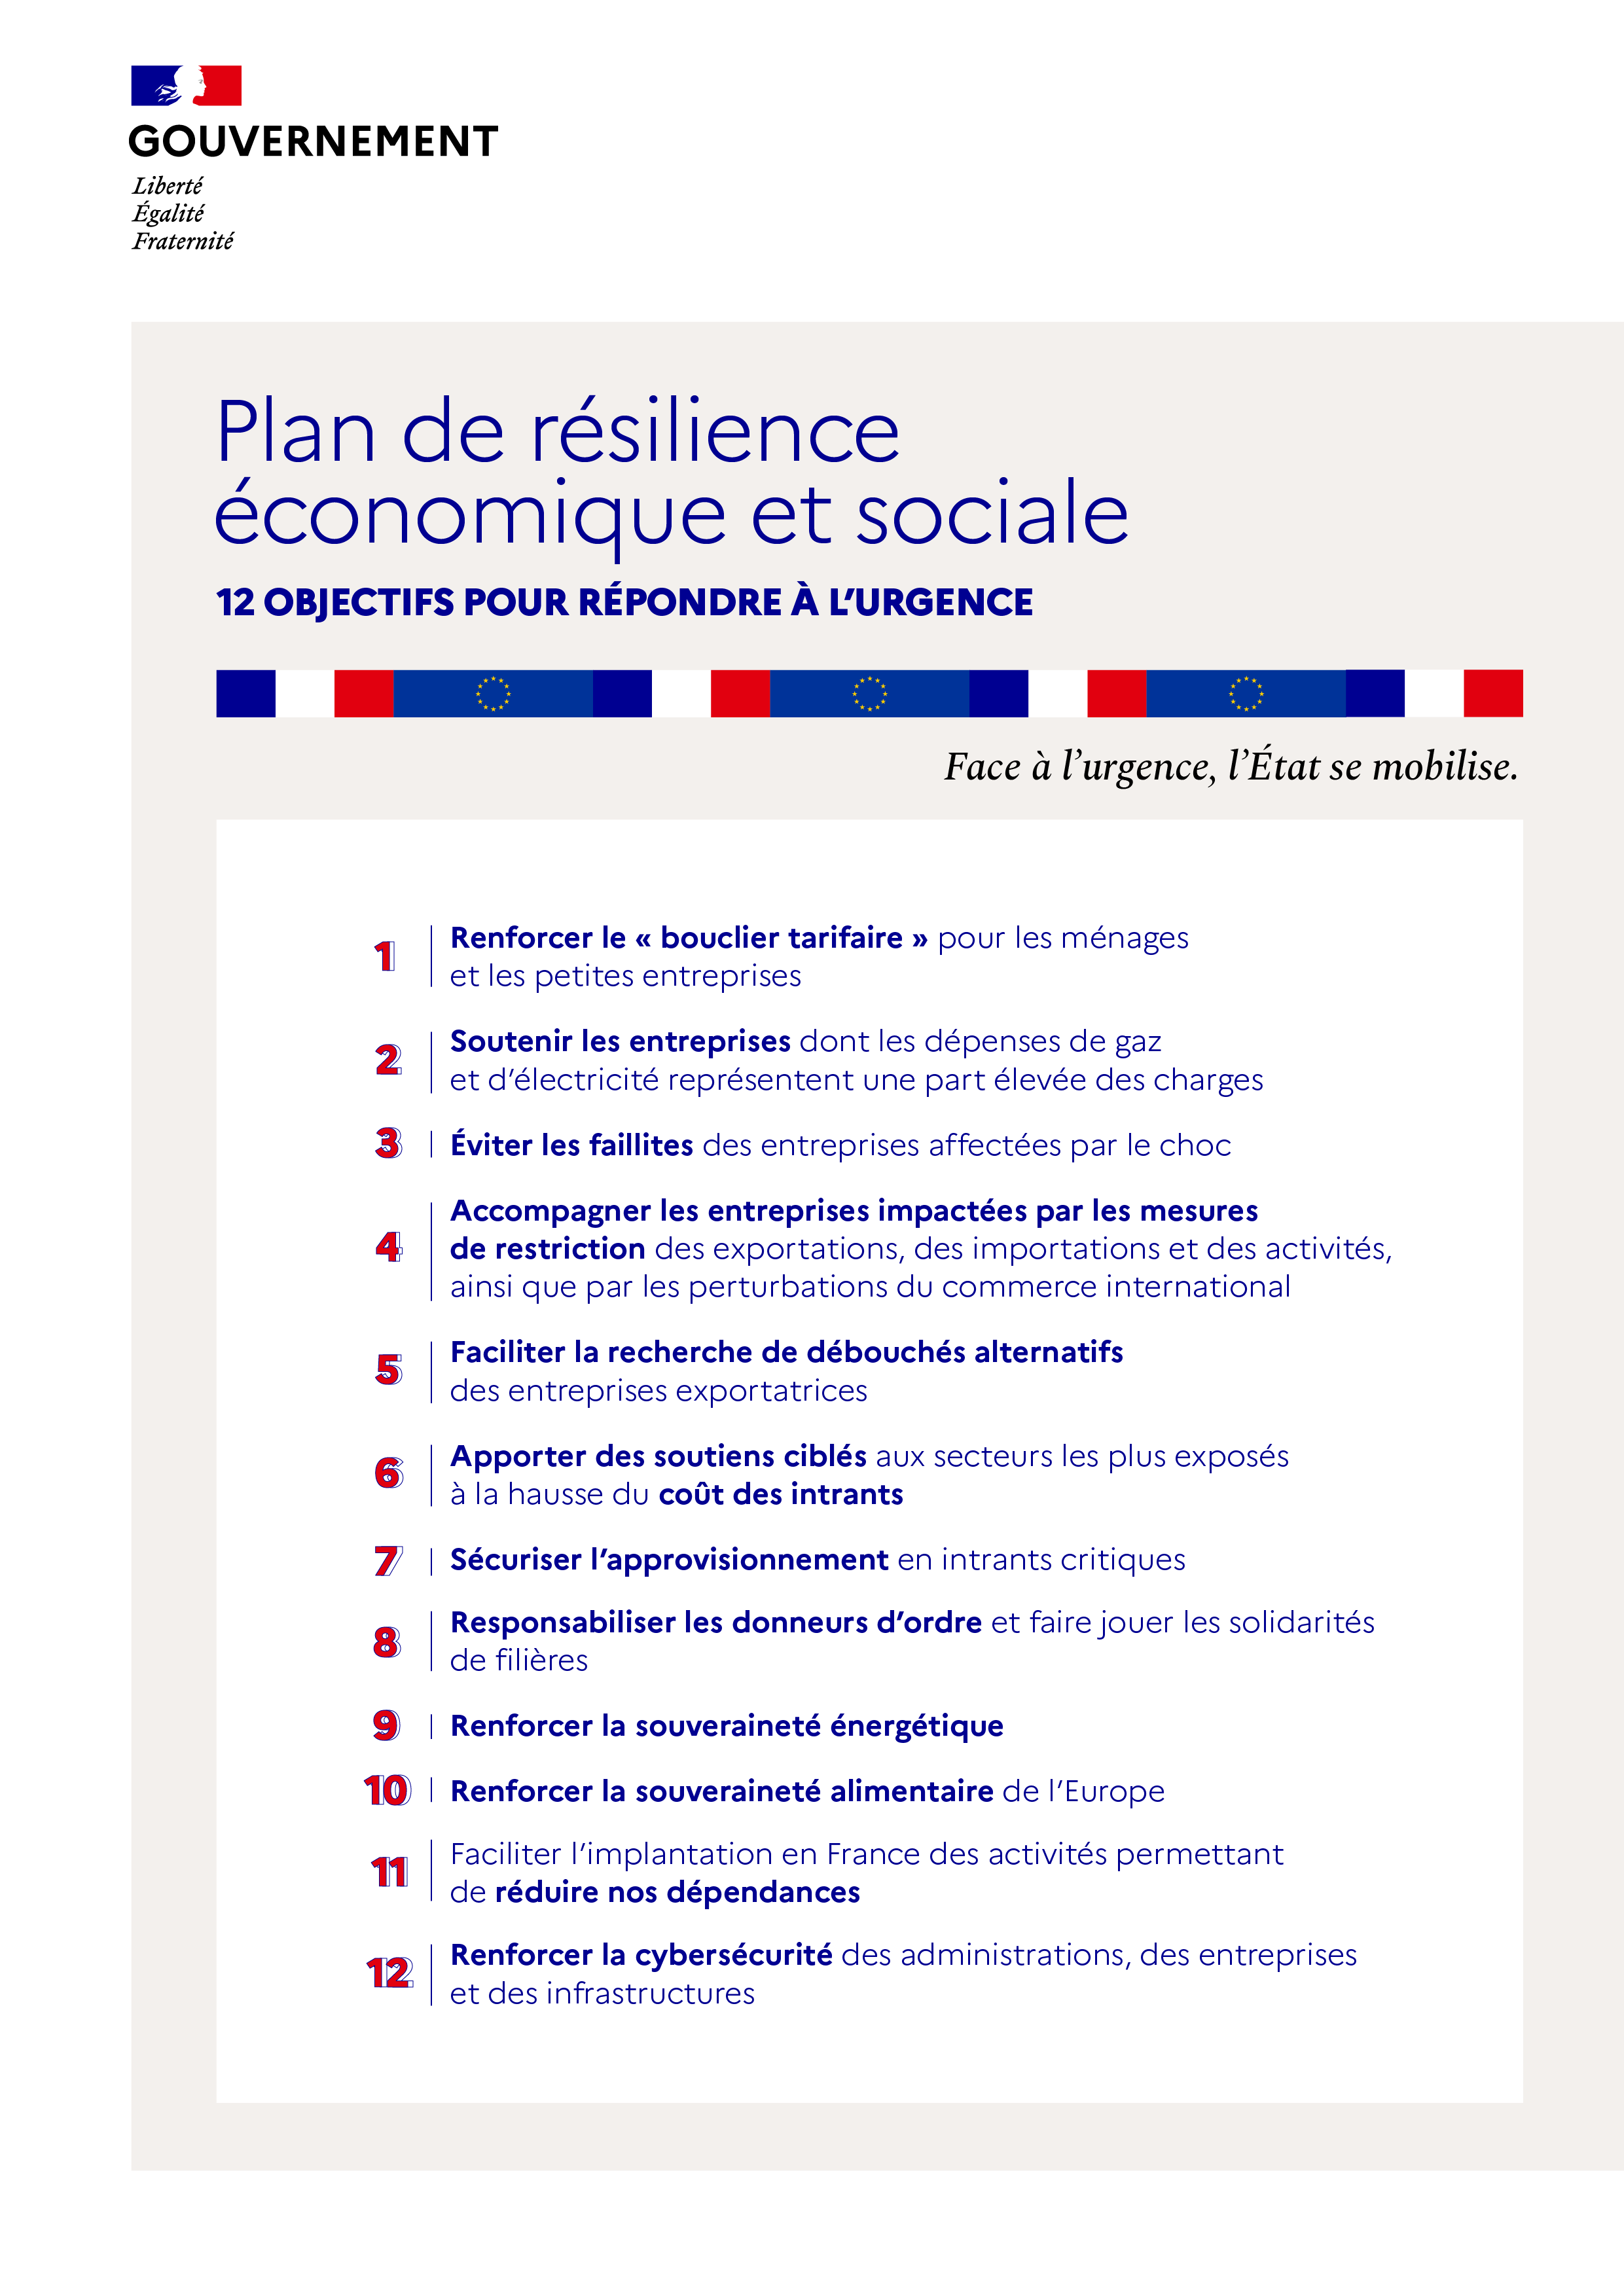 Les 12 objectifs du plan de résilience 